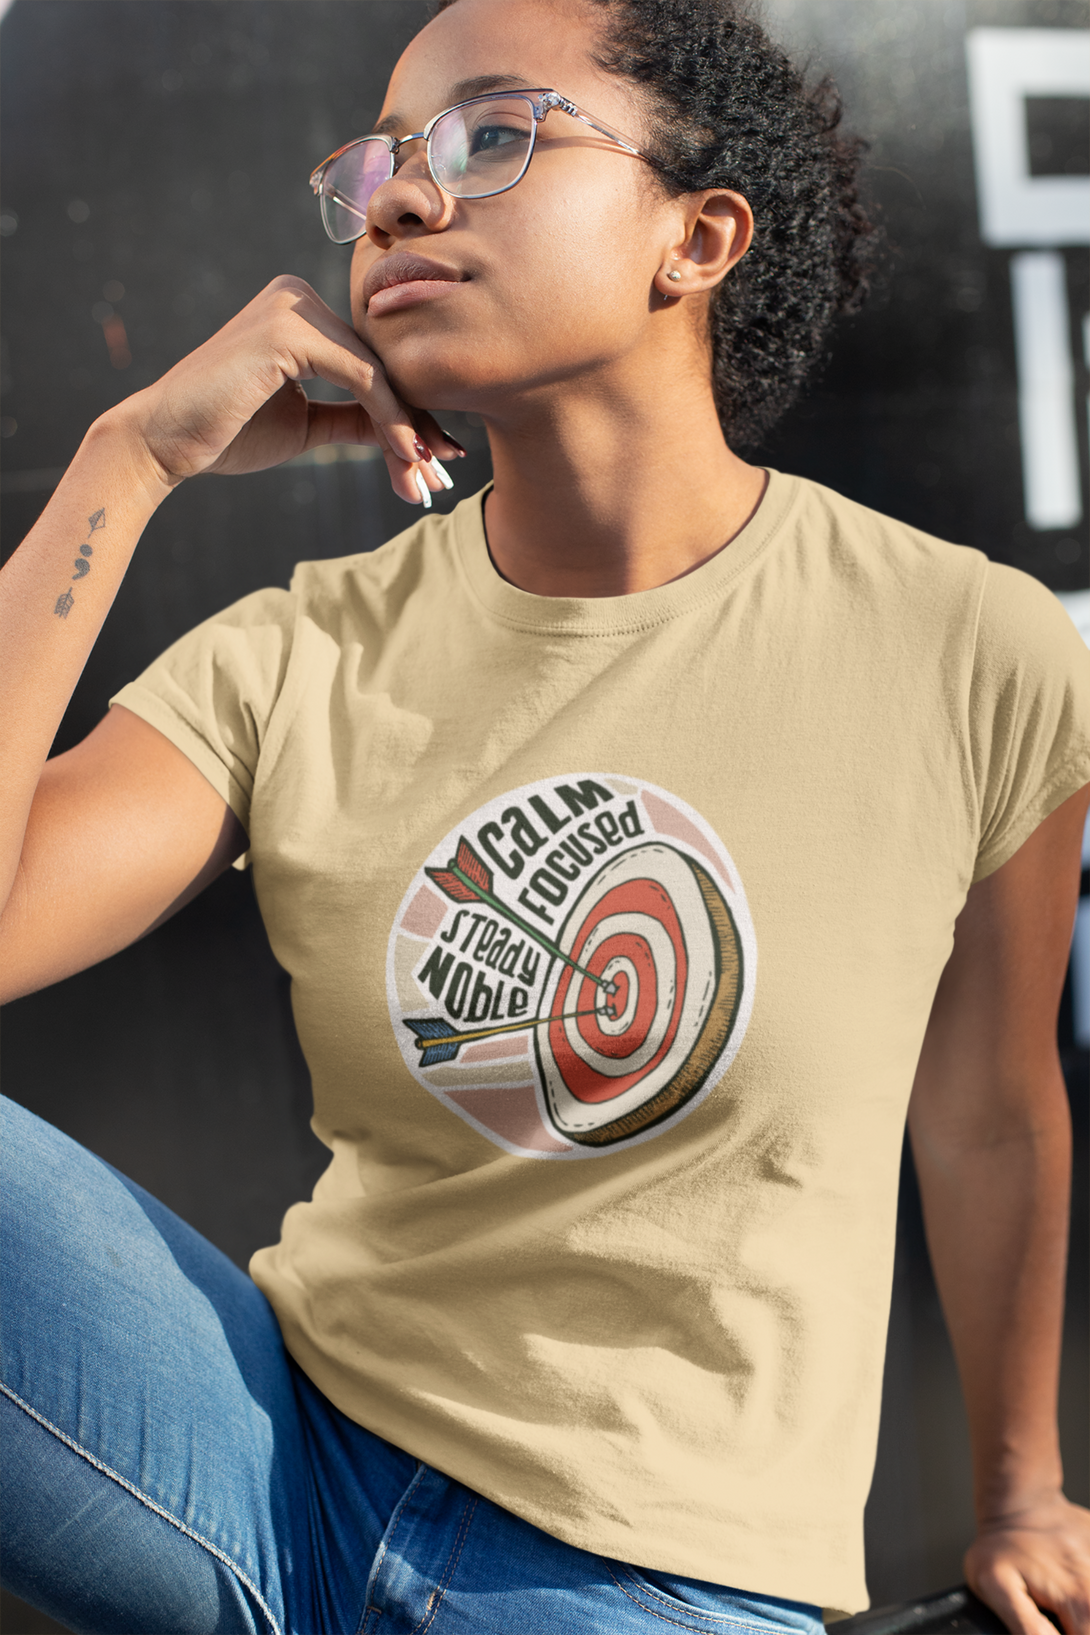 Bullseye Printed T-Shirt For Women - WowWaves - 7